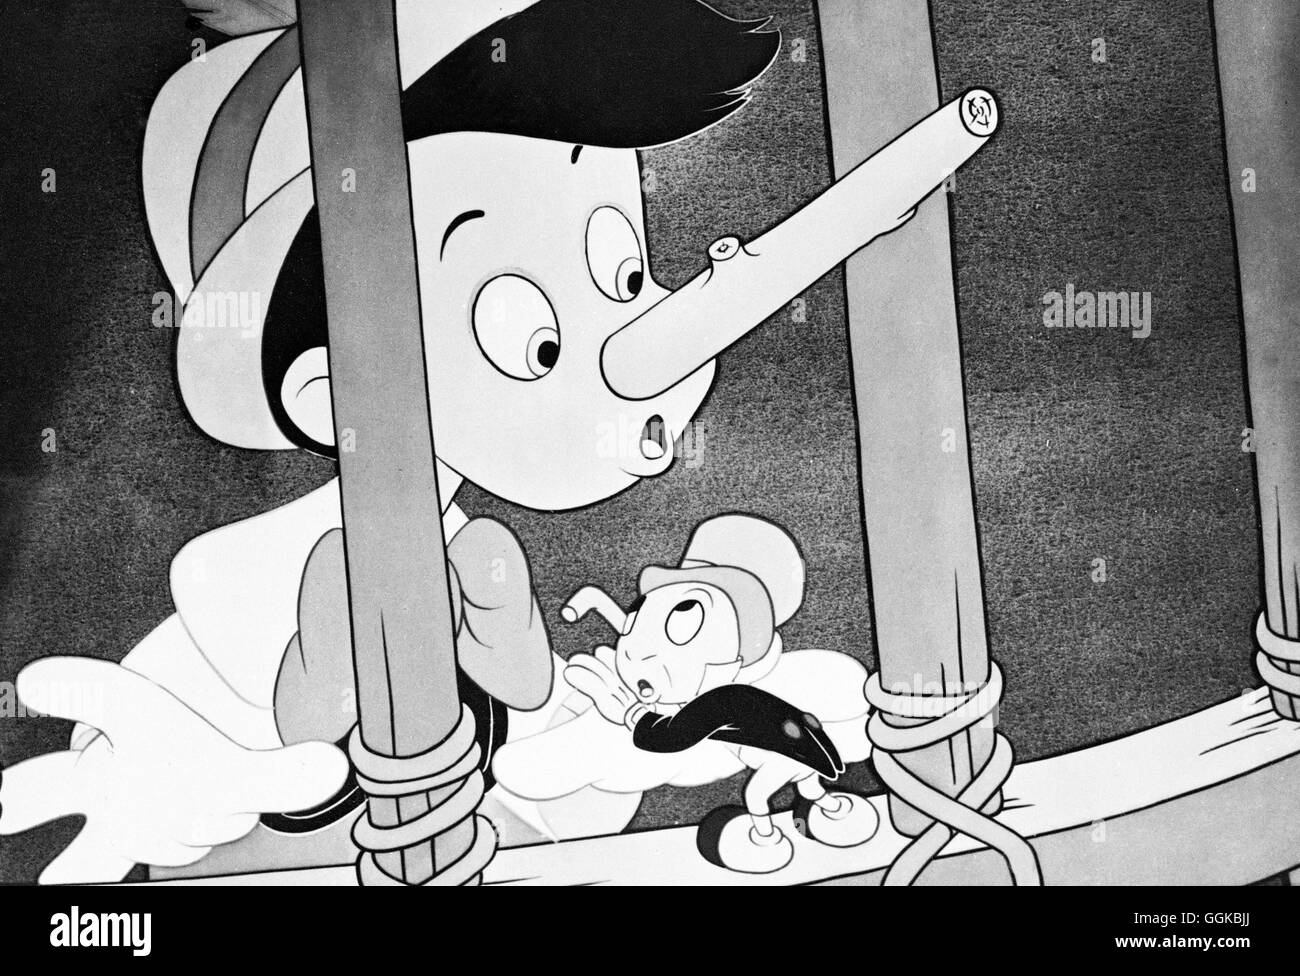 PINOCCHIO / Pinocchio USA 1940 / Hamilton Luske Szene aus Walt Disney's 'Pinocchio', 1940. Regie: Hamilton Luske aka. Pinocchio Stock Photo